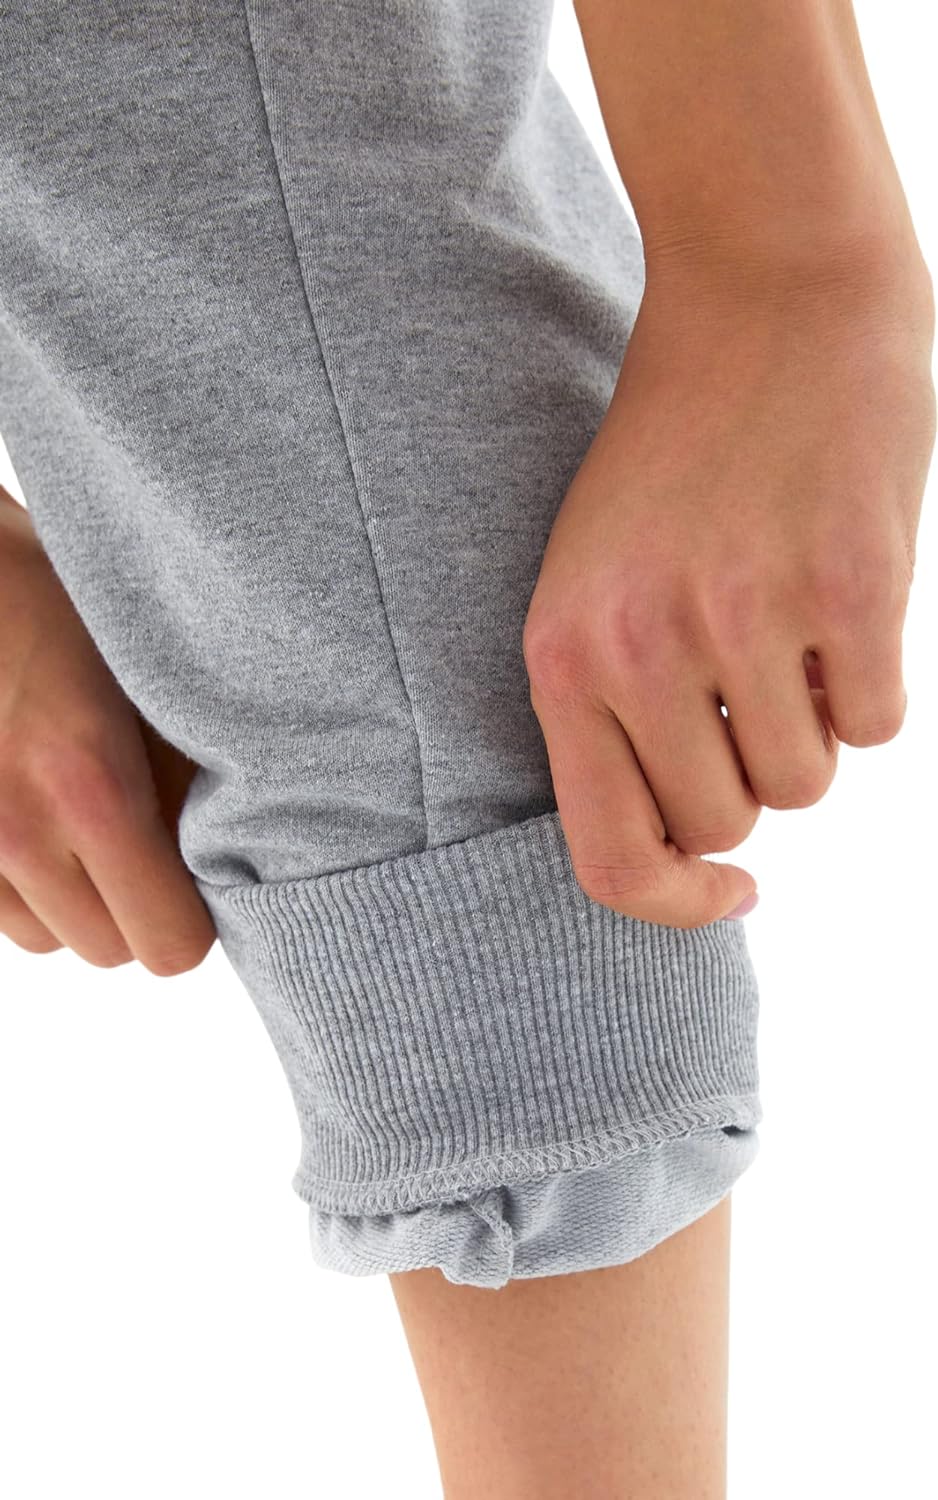 Björn Swensen Pantalon de jogging pour femme en coton pantalon de sport long, coupe ajustée - fitnessterapy